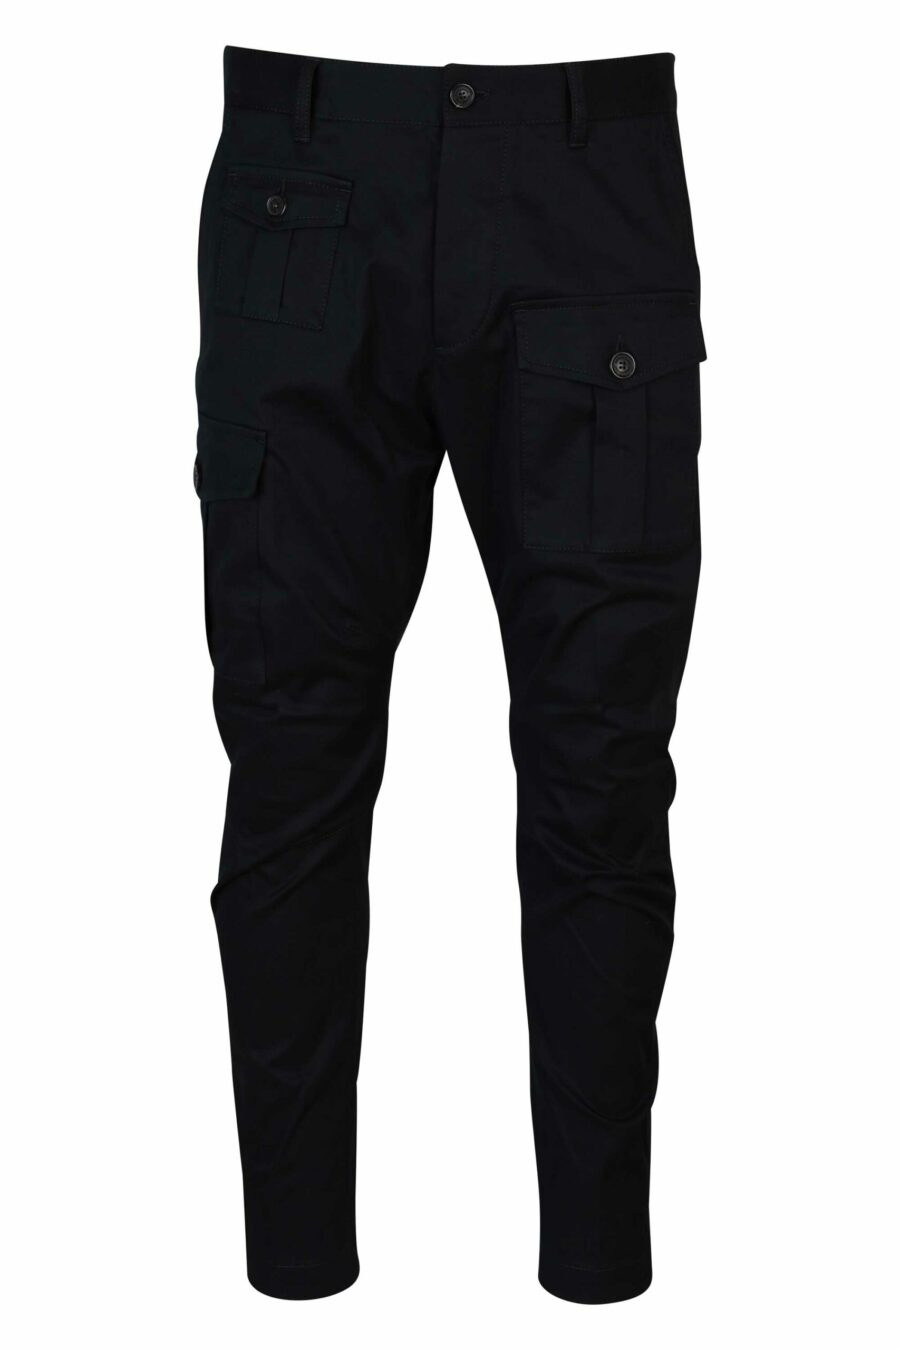 Pantalon cargo noir "sexy cargo" - 8054148389000 échelonné